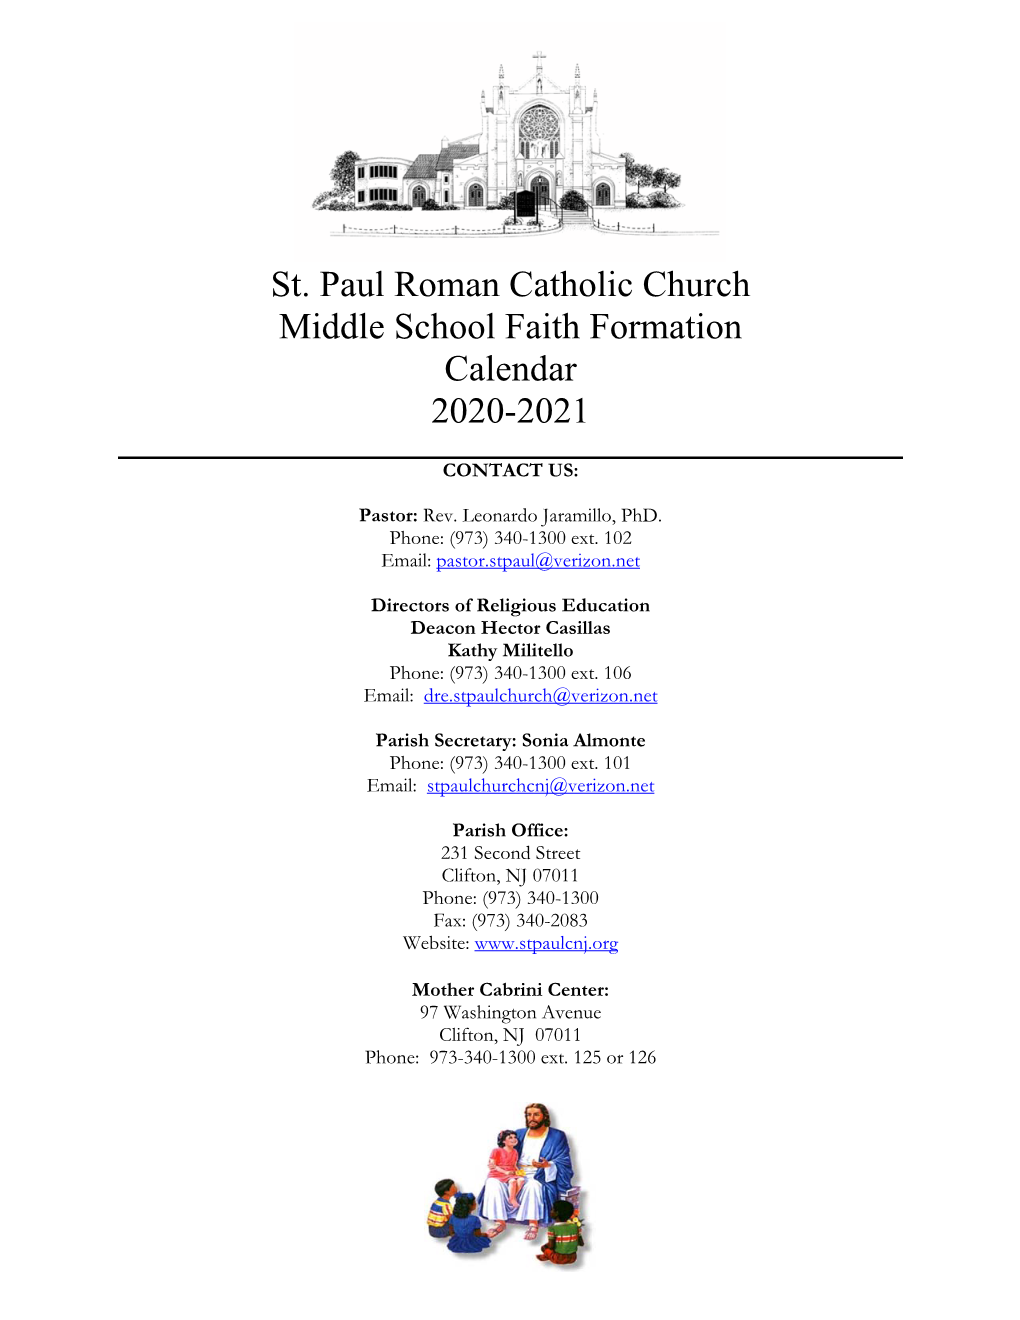 St. Paul Roman Catholic Church Middle School Faith Formation Calendar 2020-2021